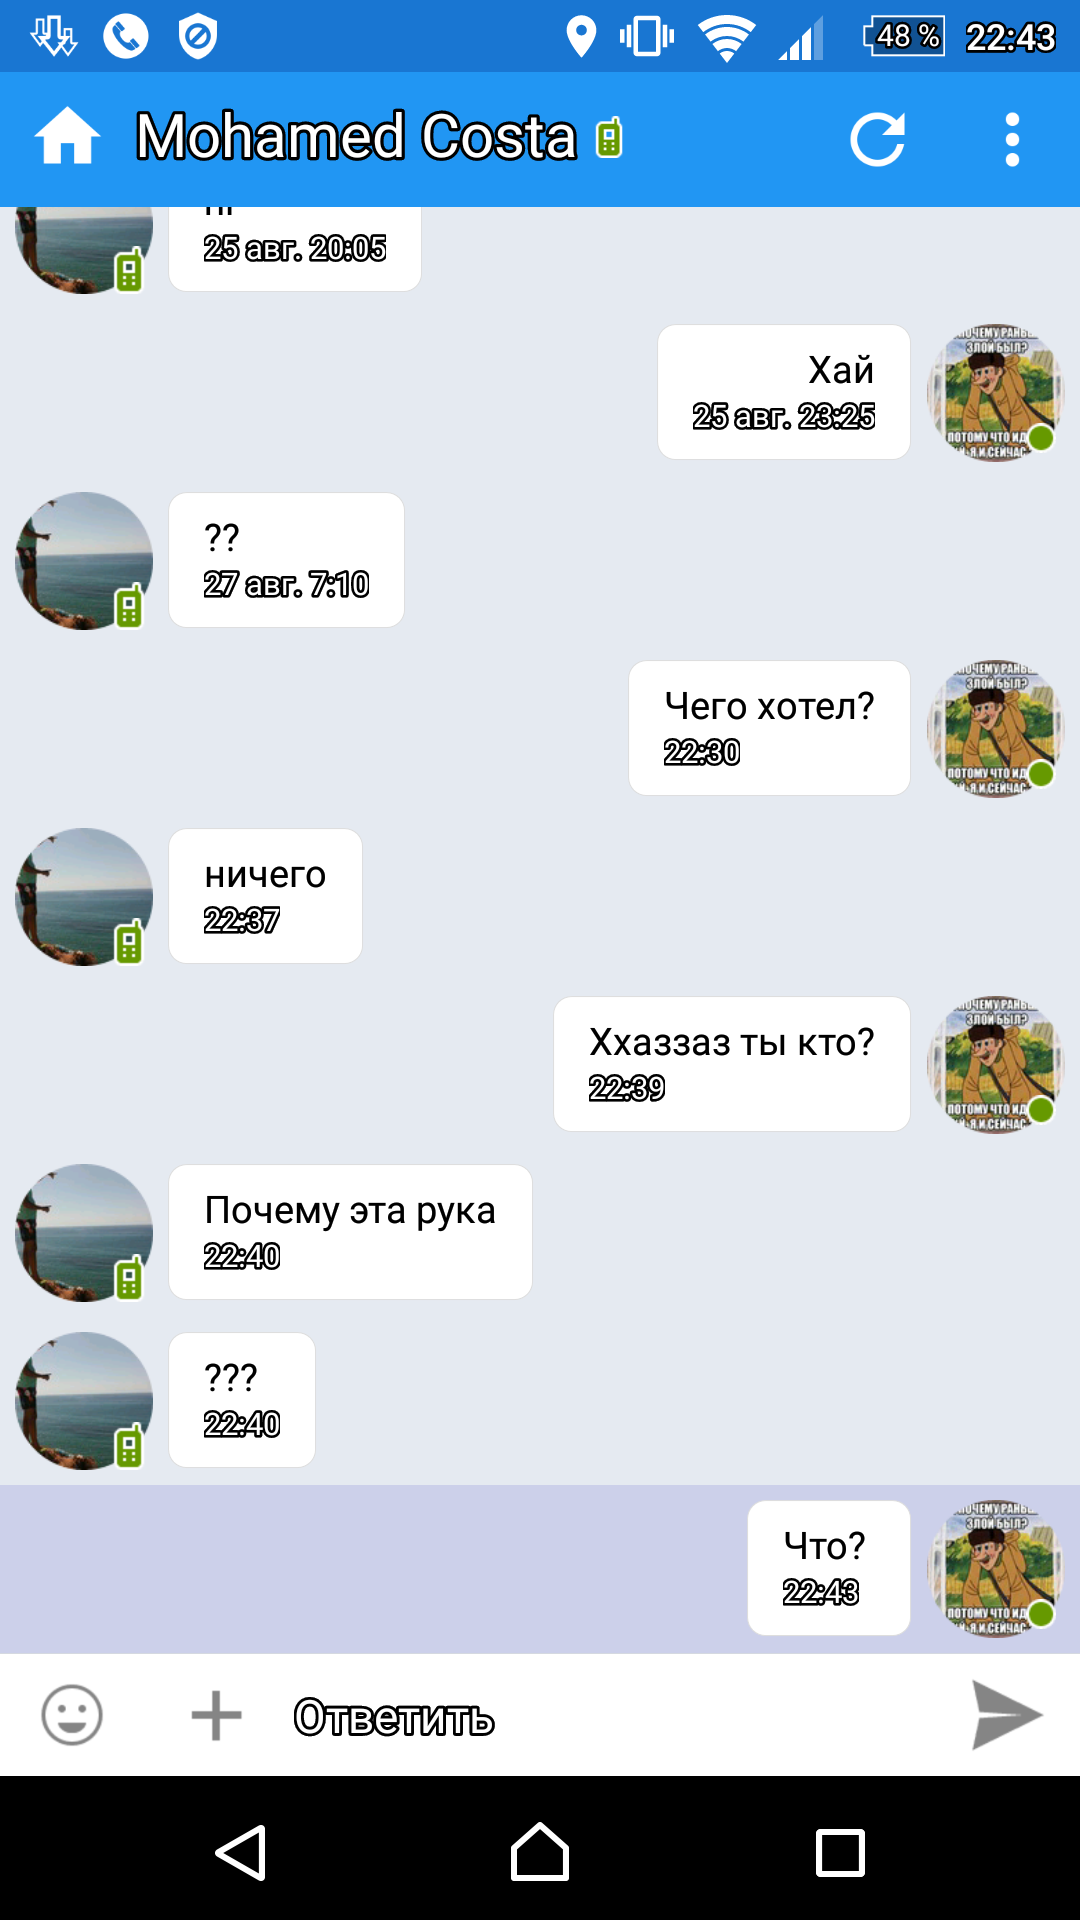 Саяногорск Инфо - screenshot_20160828-224352.png, Скачано: 517